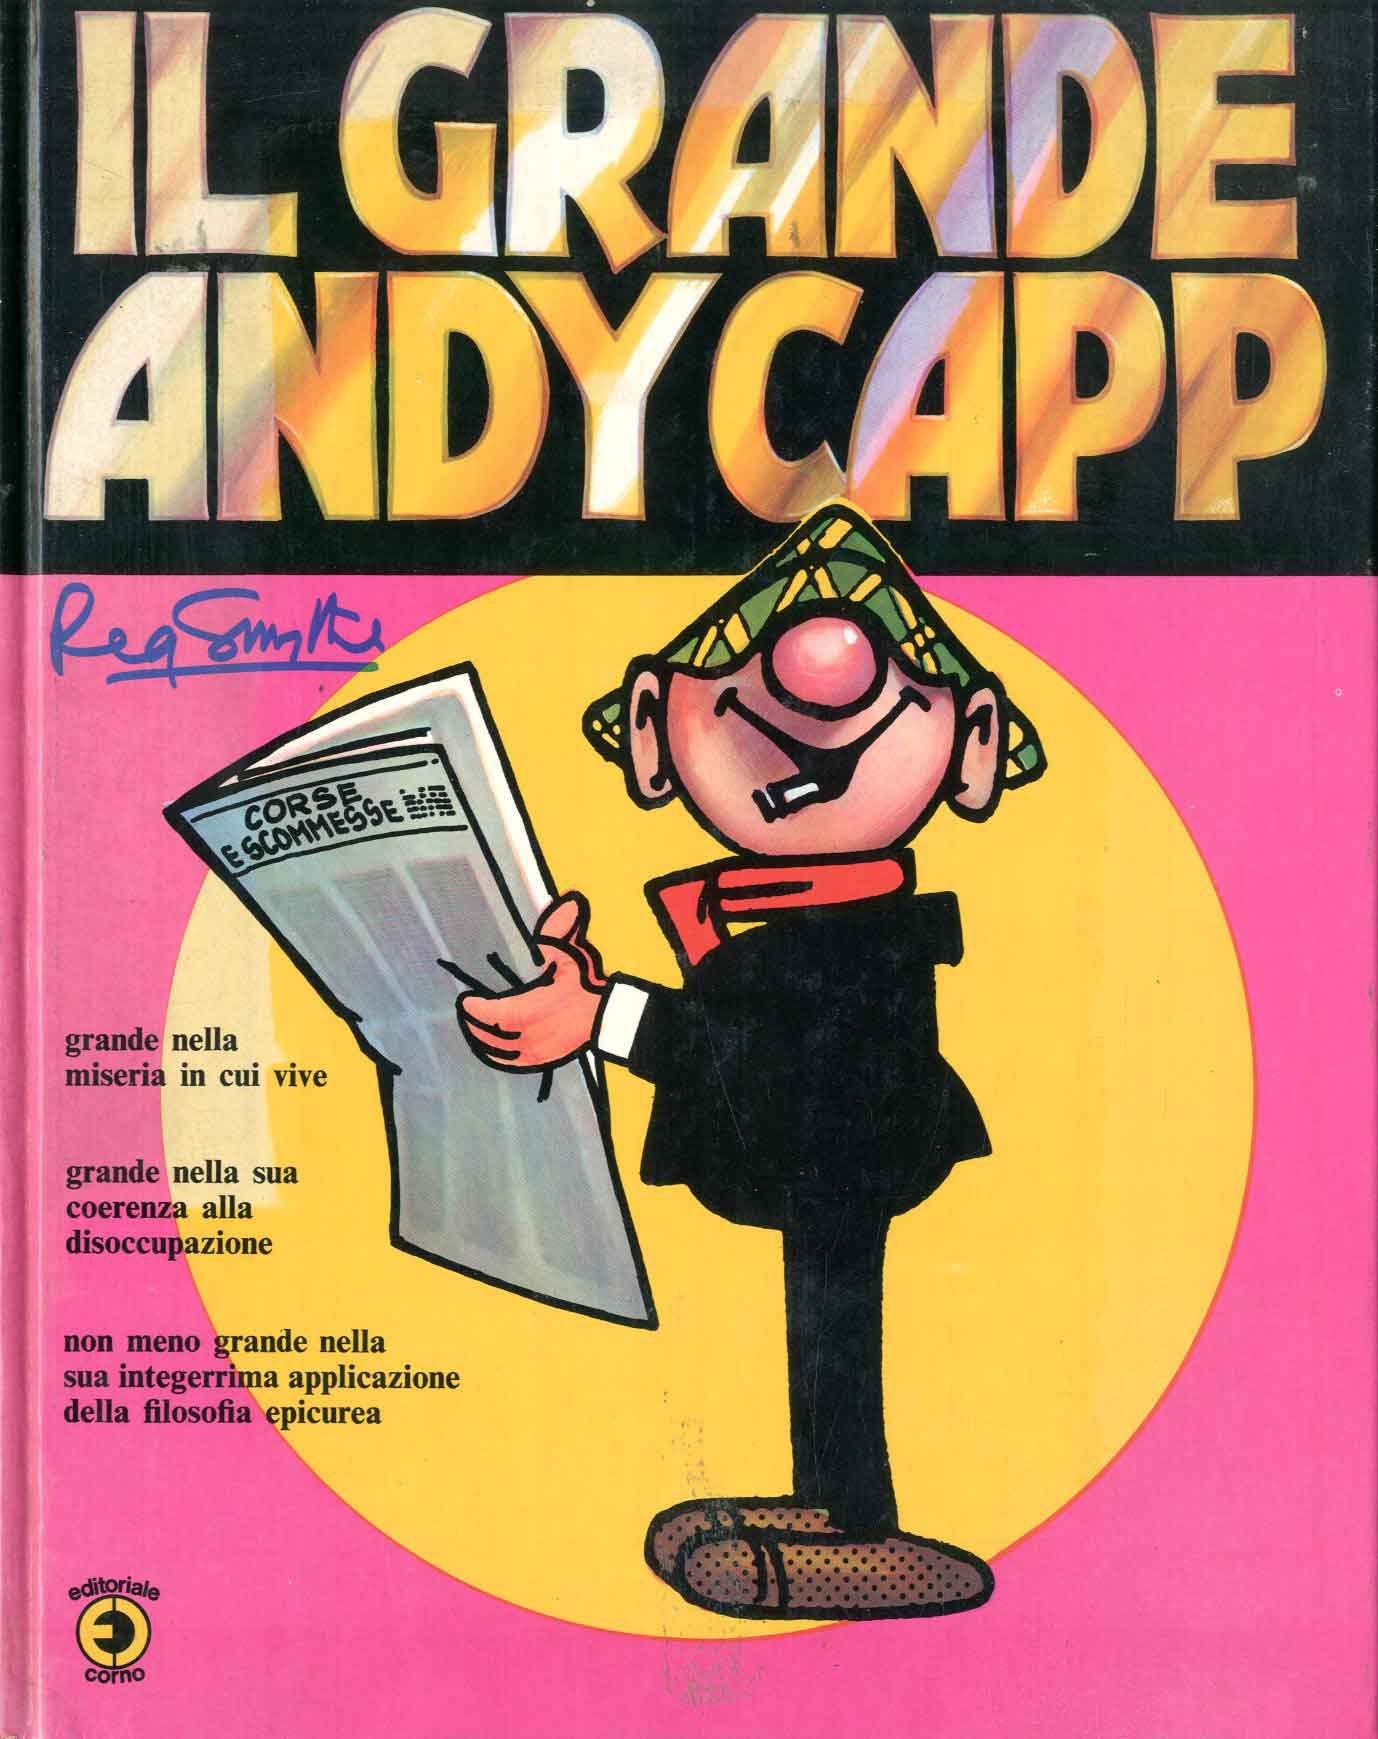 Il Grande Andy Capp